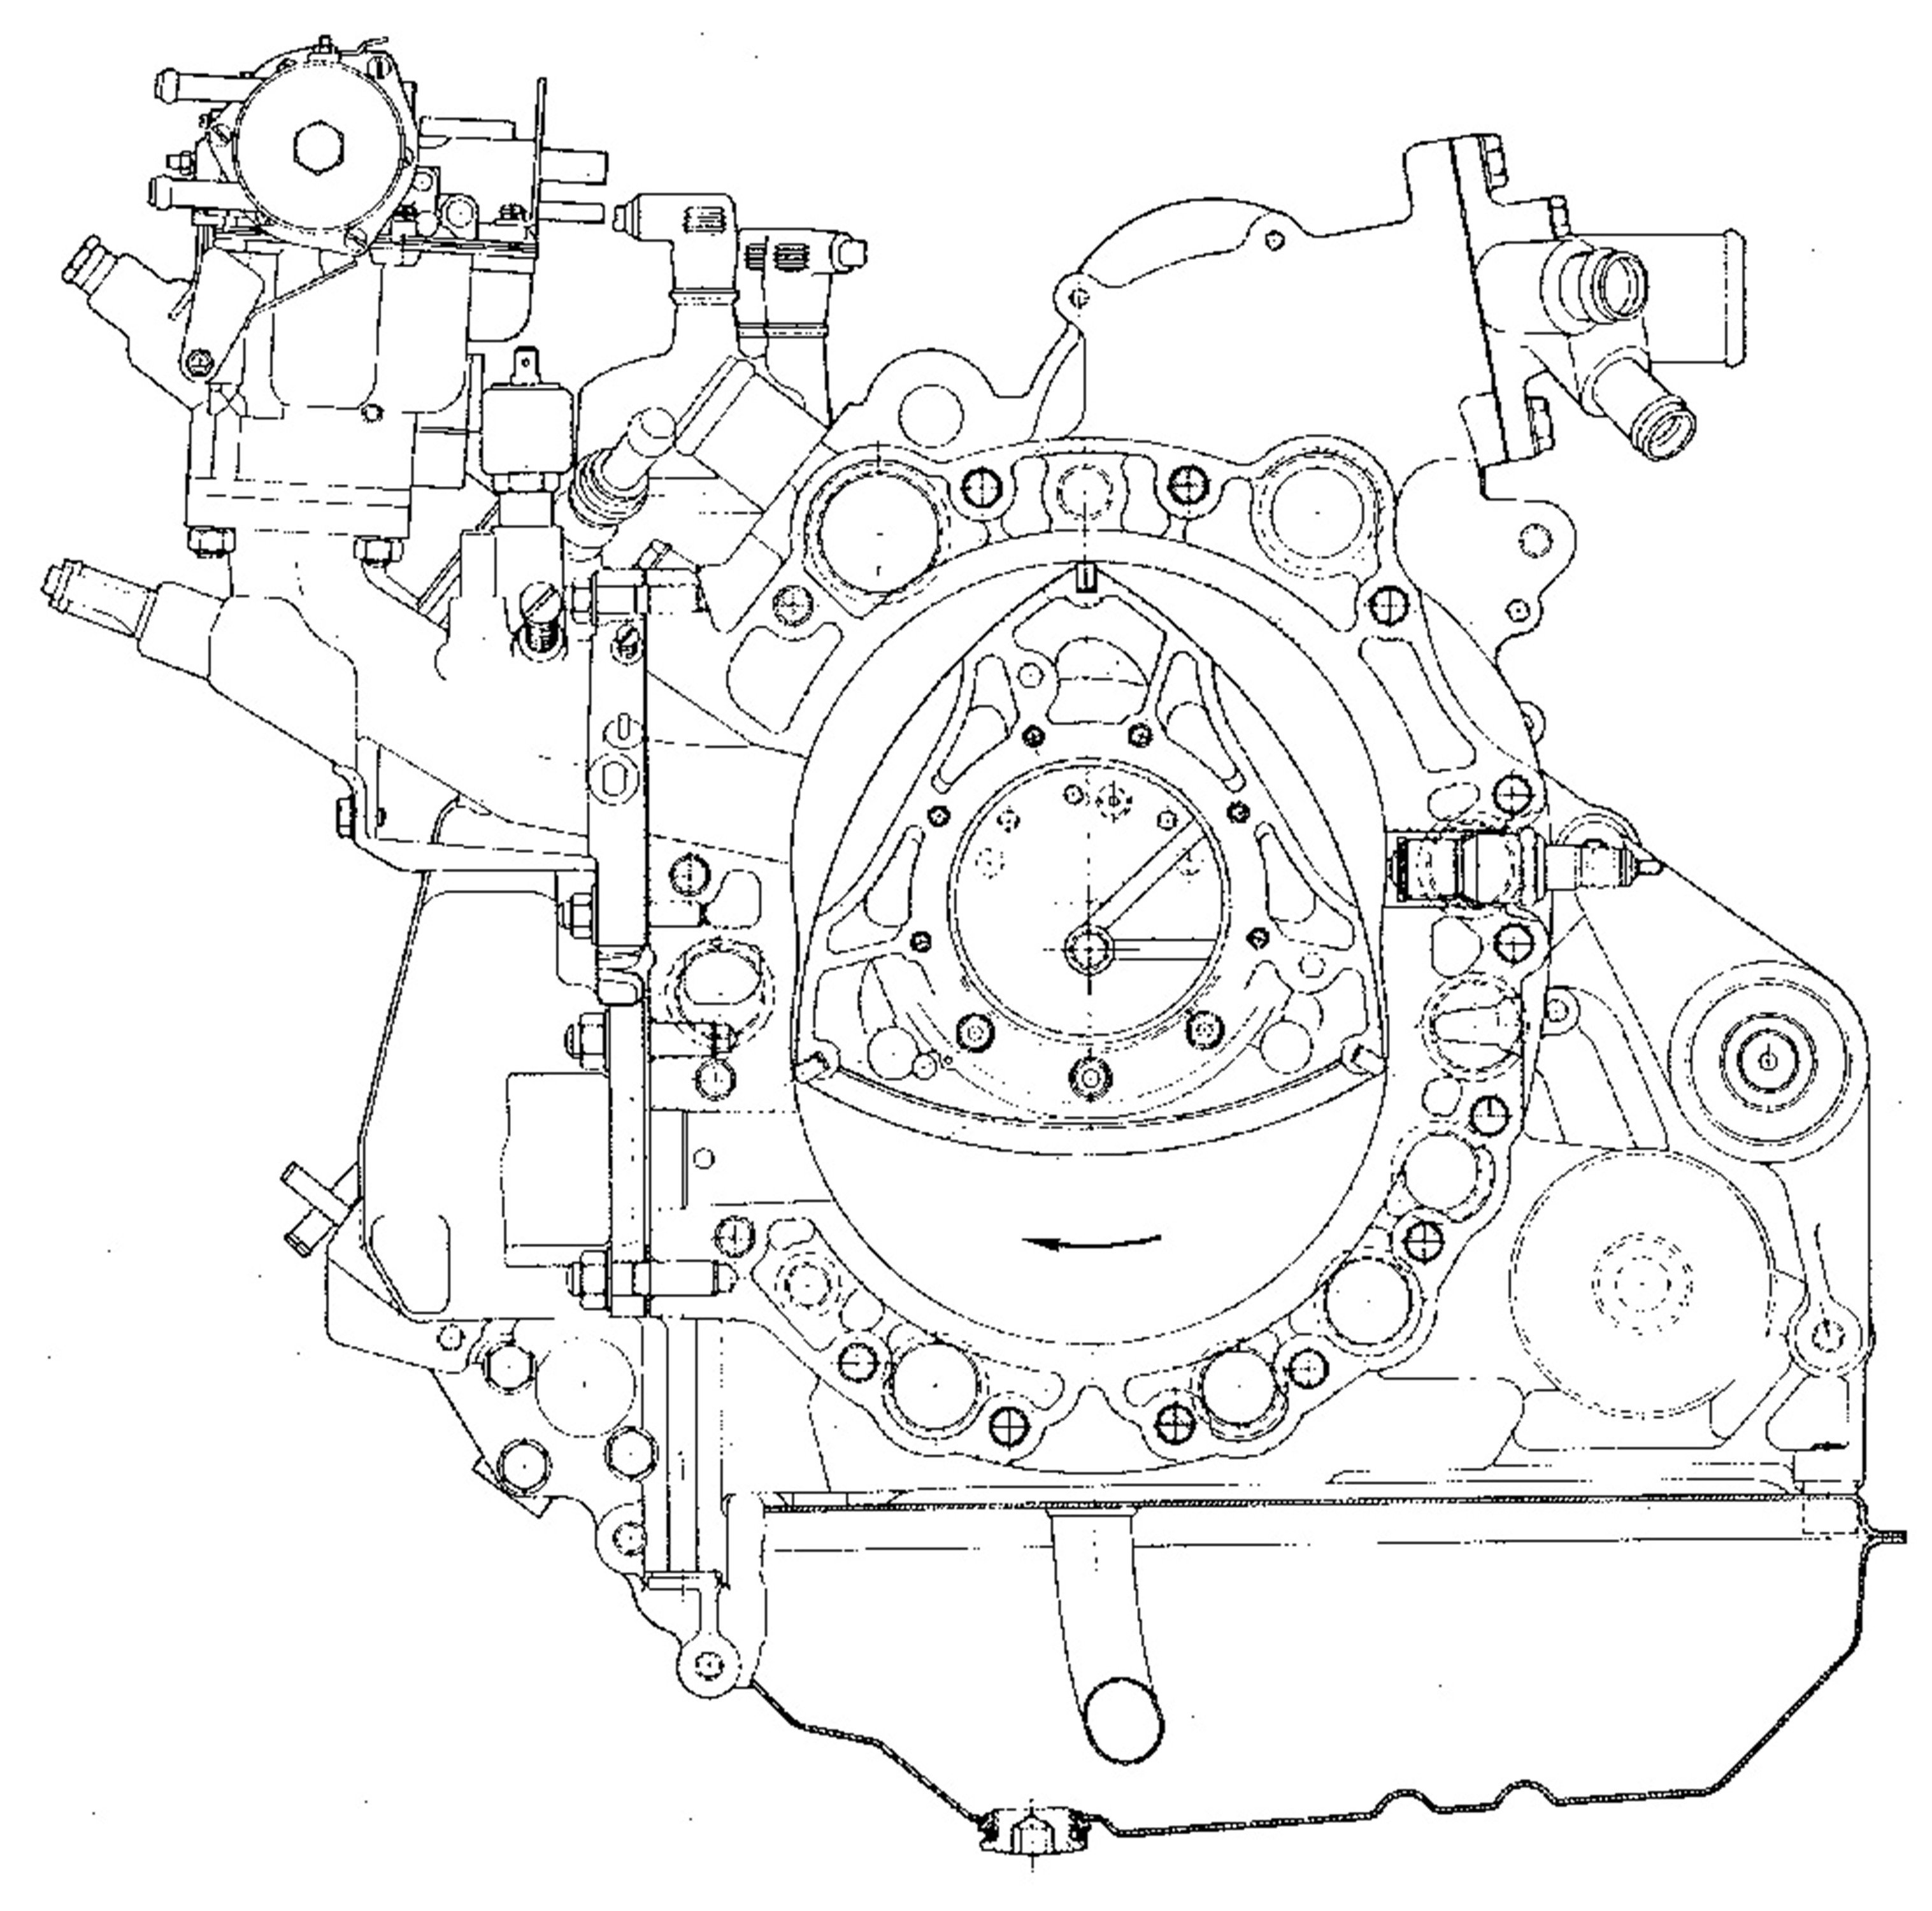 birotor, Cutaway, Wankel, Engine Wallpaper